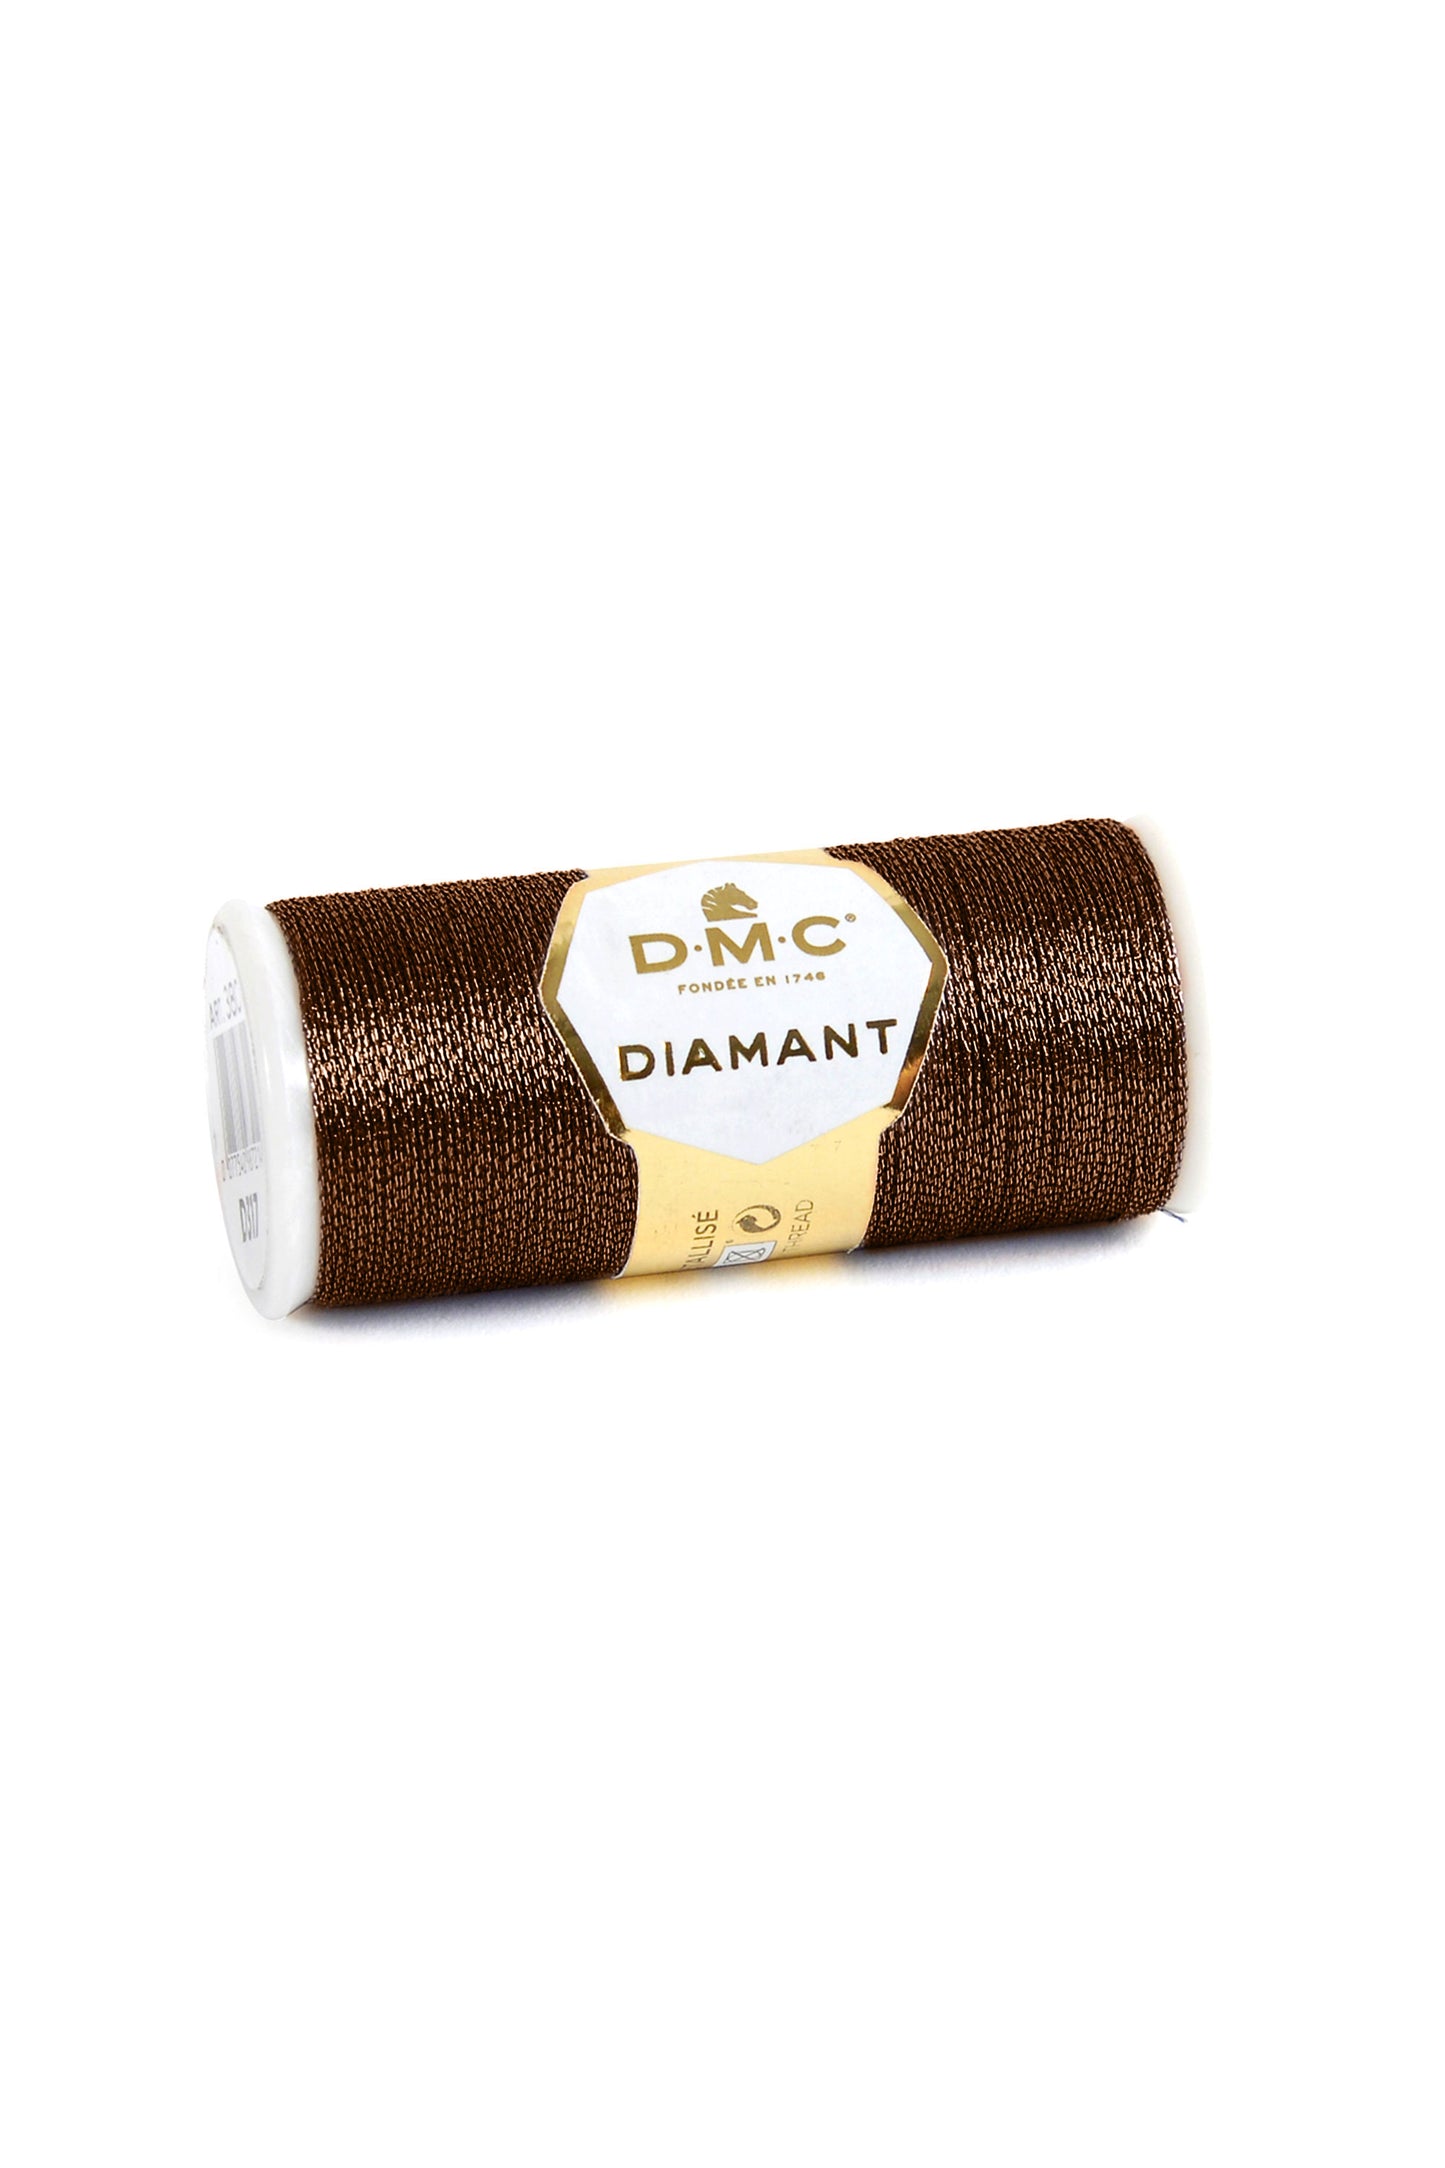 D898 Brown – DMC Diamant metallic thread